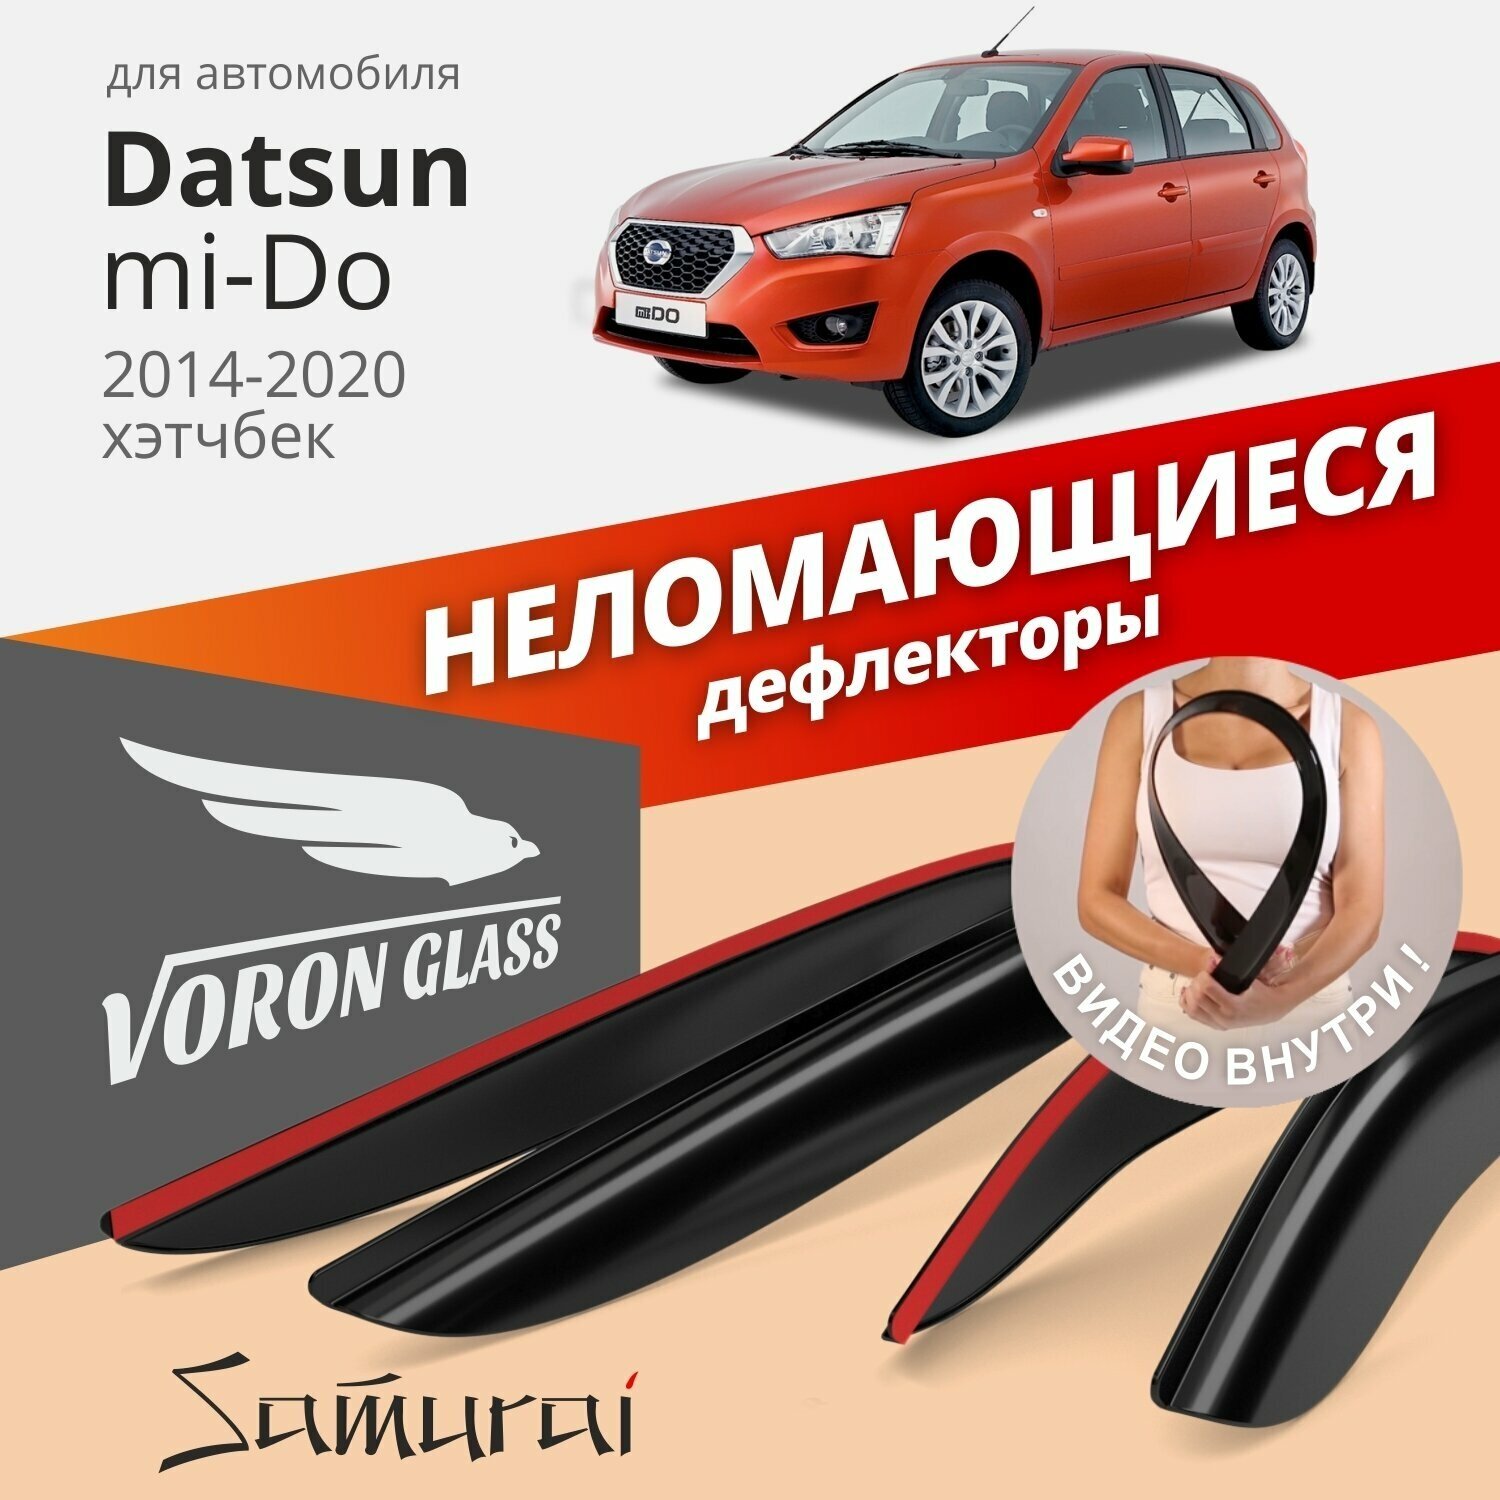 Дефлекторы окон неломающиеся Voron Glass серия Samurai для Datsun mi-Do 2014-2020 хэтчбек накладные 4 шт.